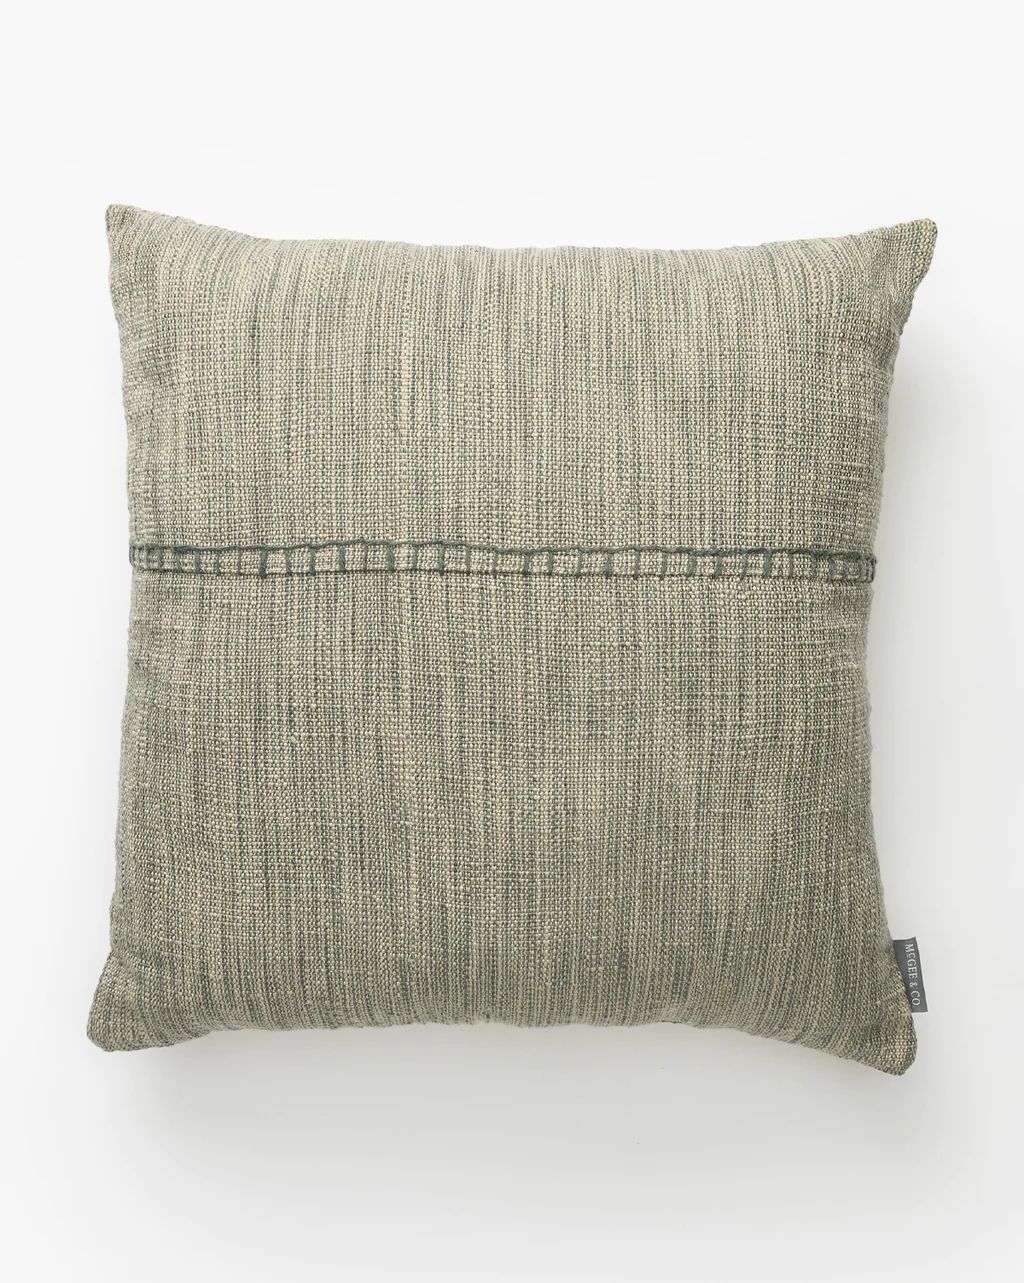 Arnette Indoor/Outdoor Pillow | McGee & Co.